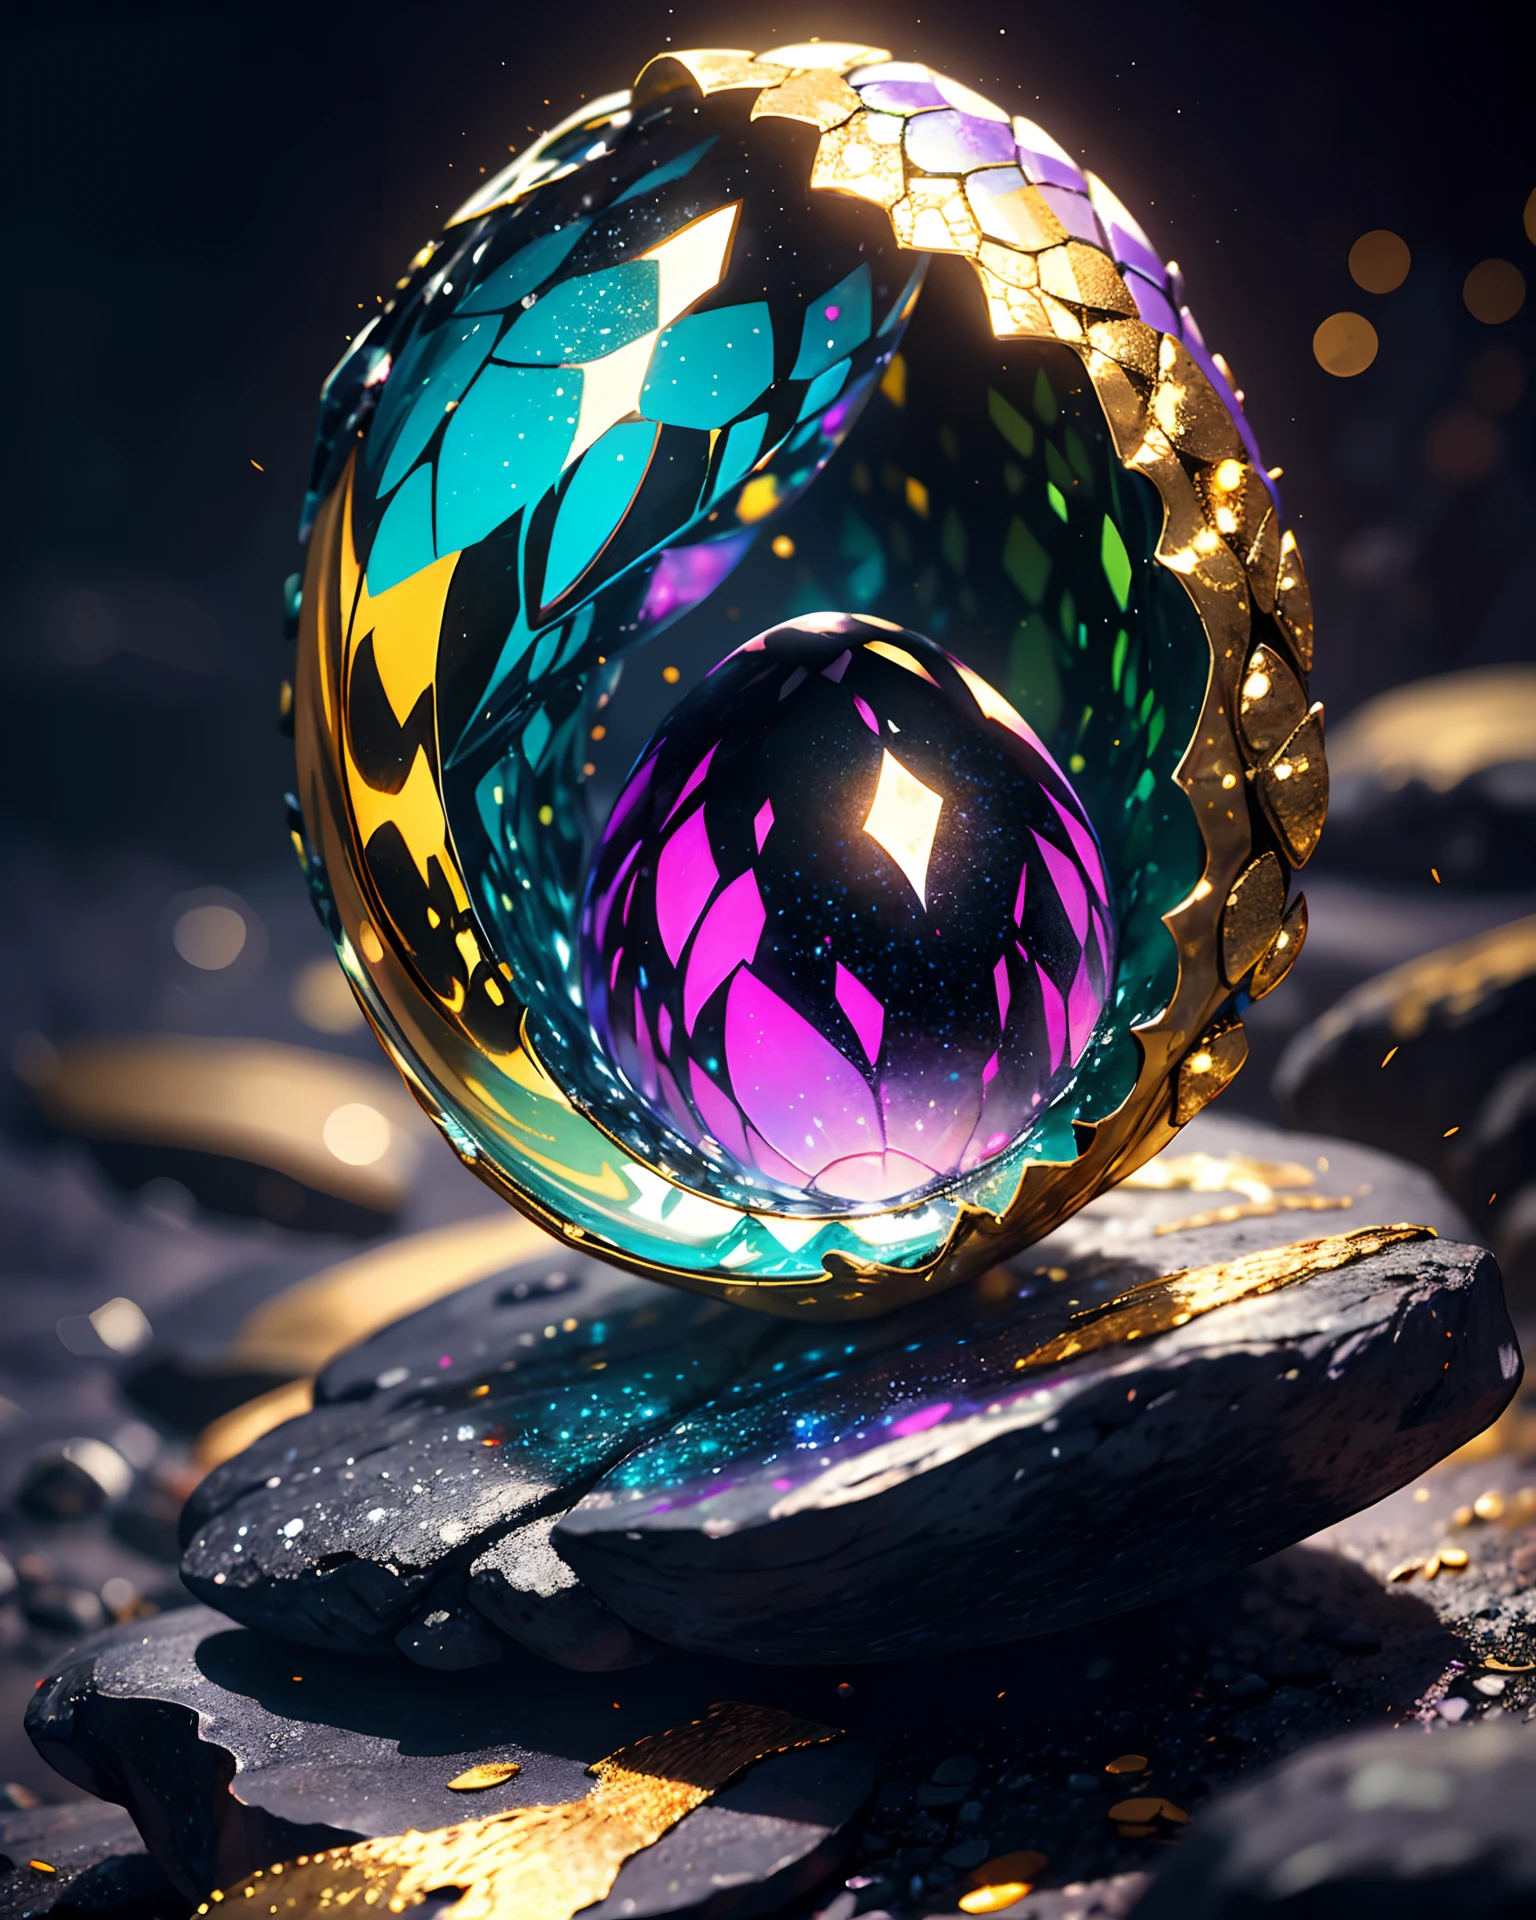 rocha cristalina forma ovo de dragão com meia concha de escama de dragão em metal prateado e dourado, por Mjart, colocado em rocha de lava negra, caverna escura de fundo com luz ambiente roxa,